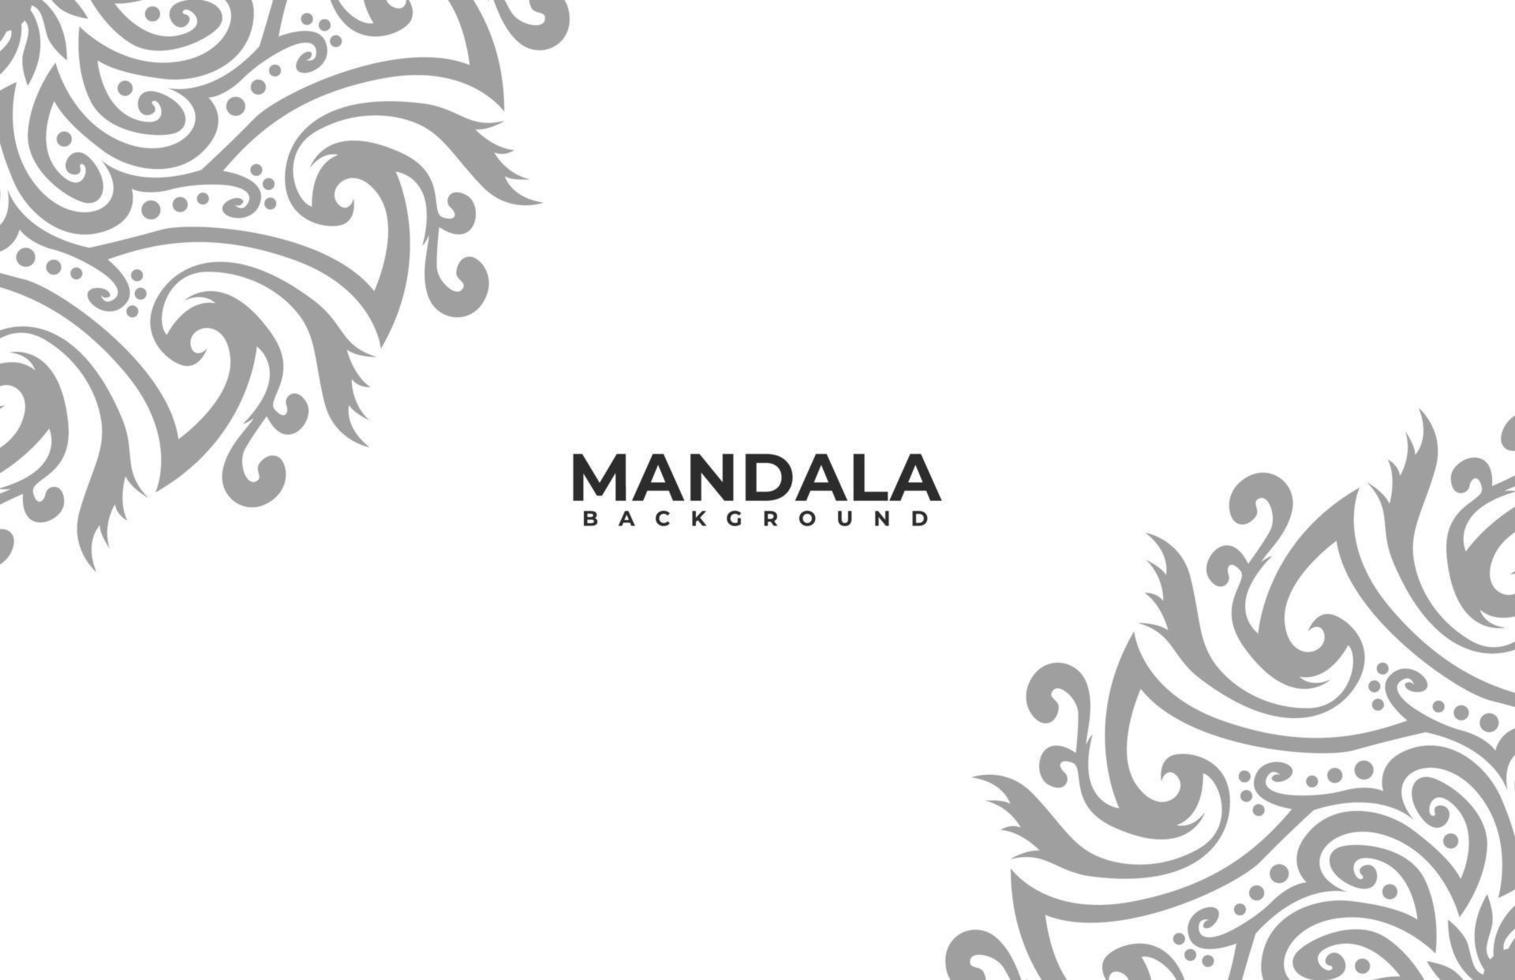 mandala konst bakgrund, stam- prydnad bakgrund, tapet med prydnad, blommig prydnad bakgrund, abstrakt bakgrund, islamic konst mandala, indisk prydnad, traditionell prydnad vektor